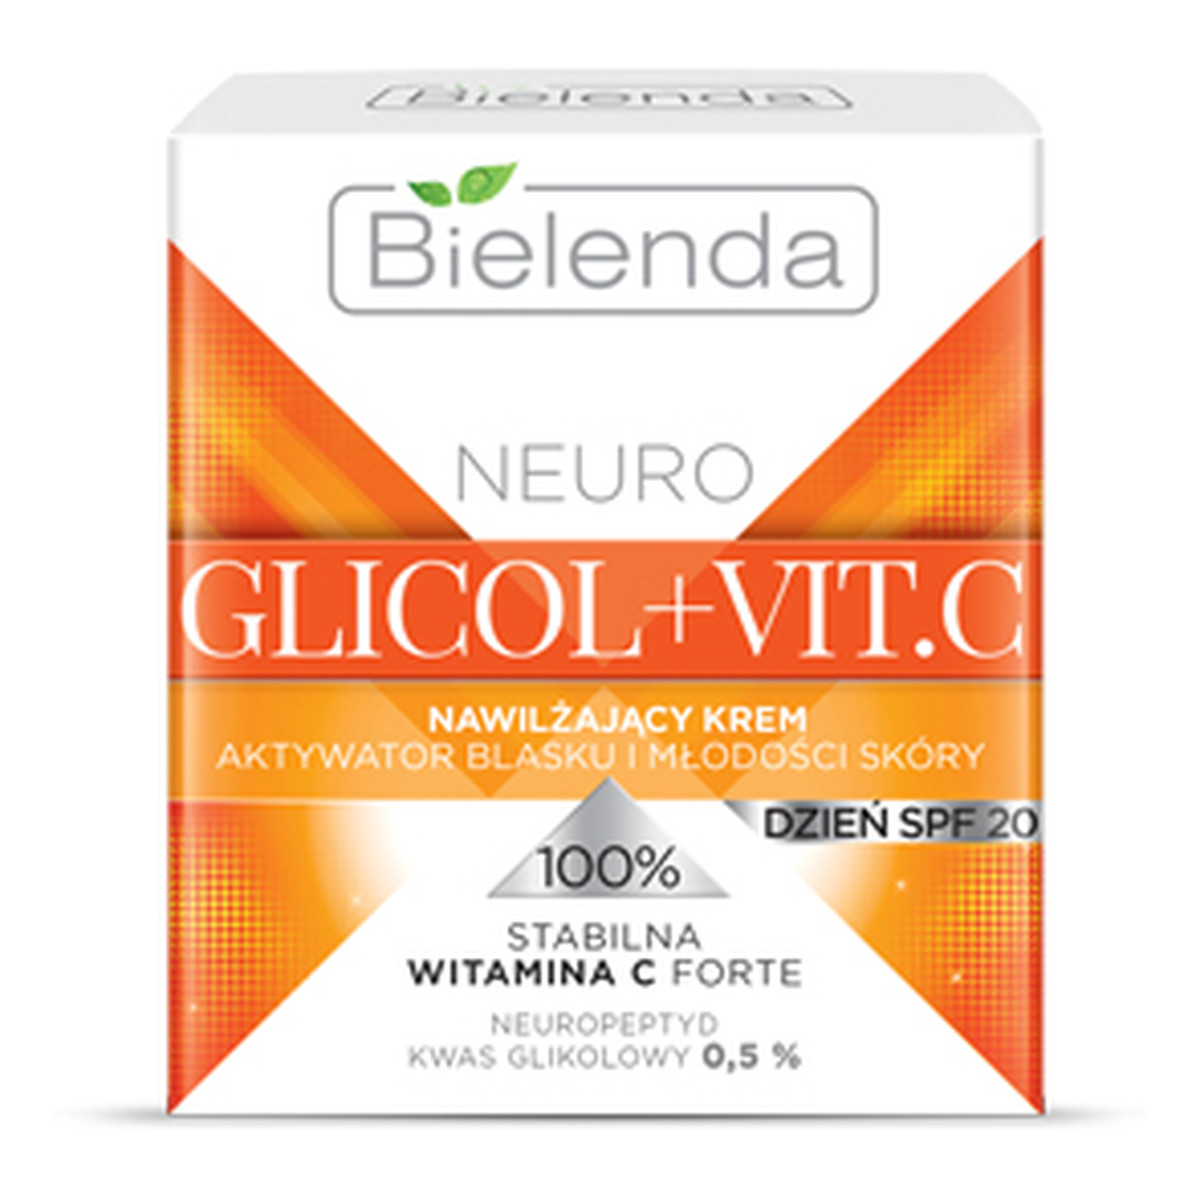 Bielenda Neuro Glicol + Vit.C Nawilżający Krem Aktywator Blasku i Młodości Skóry Na Dzień SPF 20 50ml